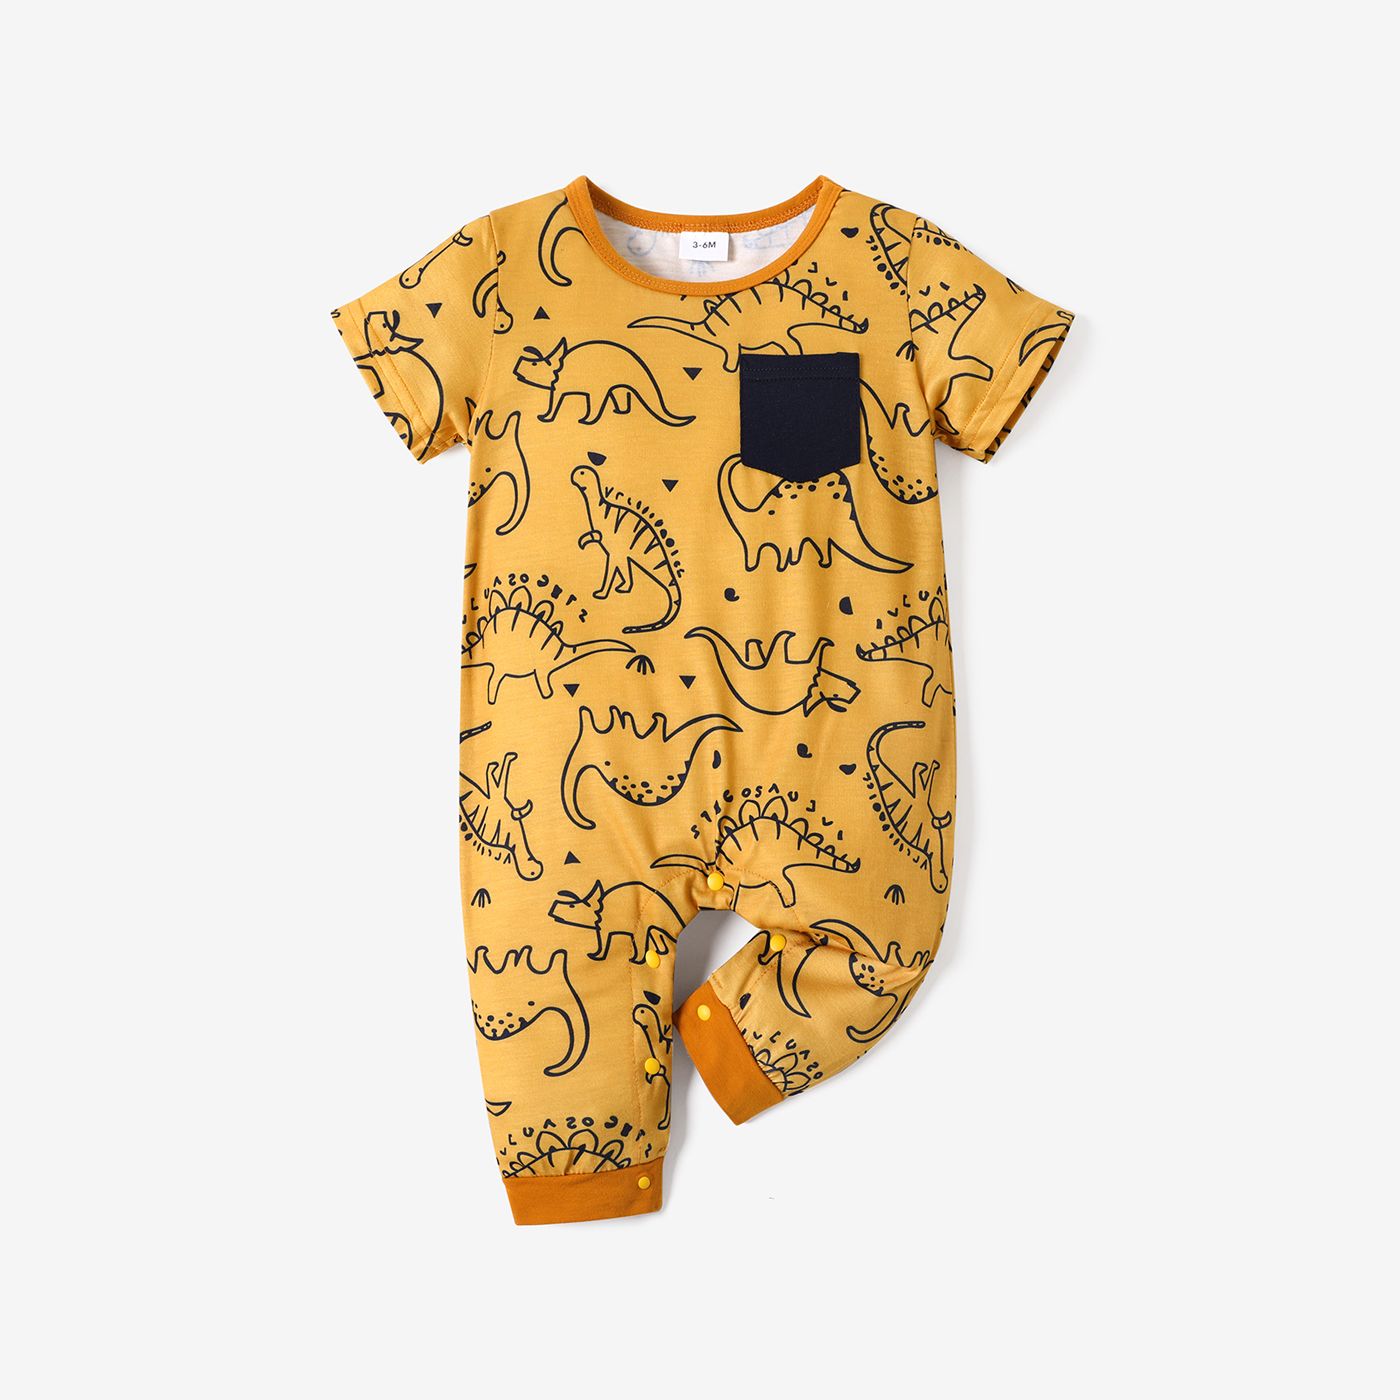 Dinosaur Allover Short-sleeve Black Baby Jumpsuit